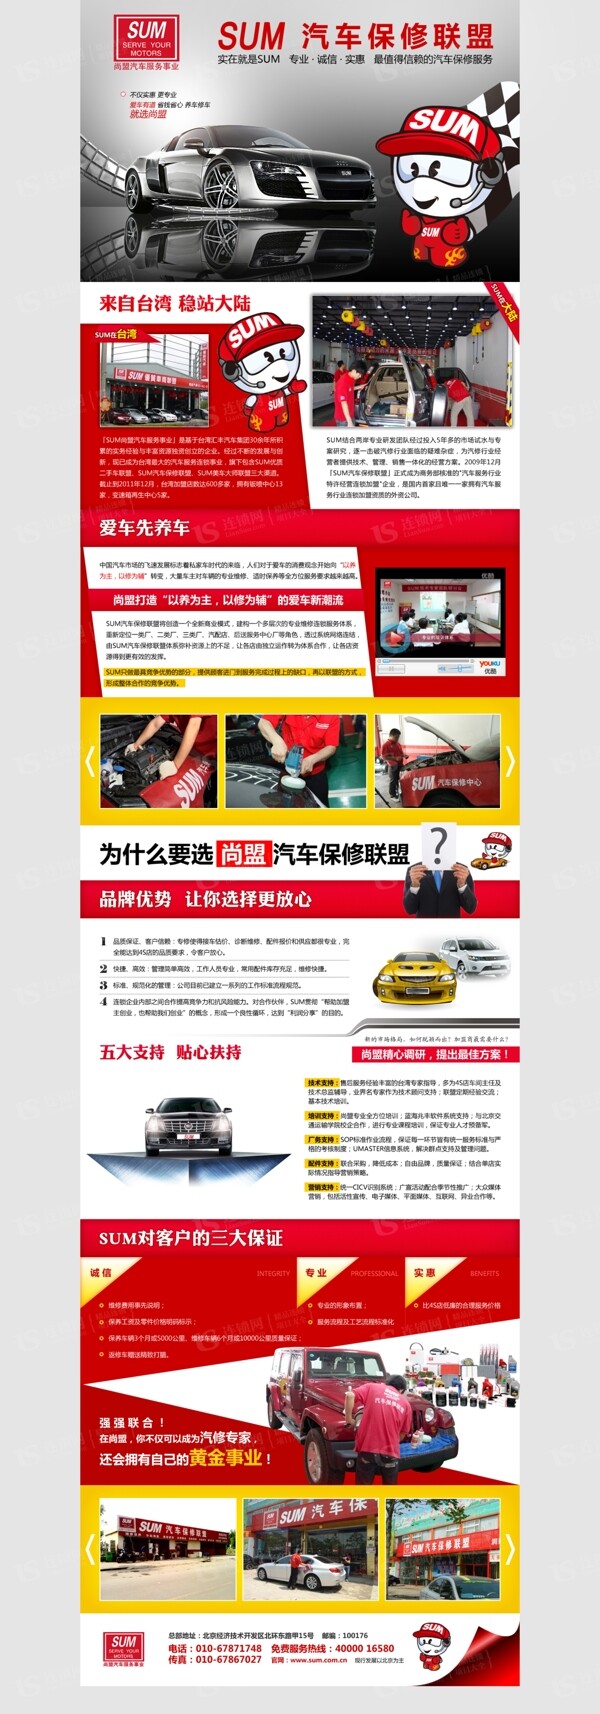 北京尚盟汽车保修招商加盟海报